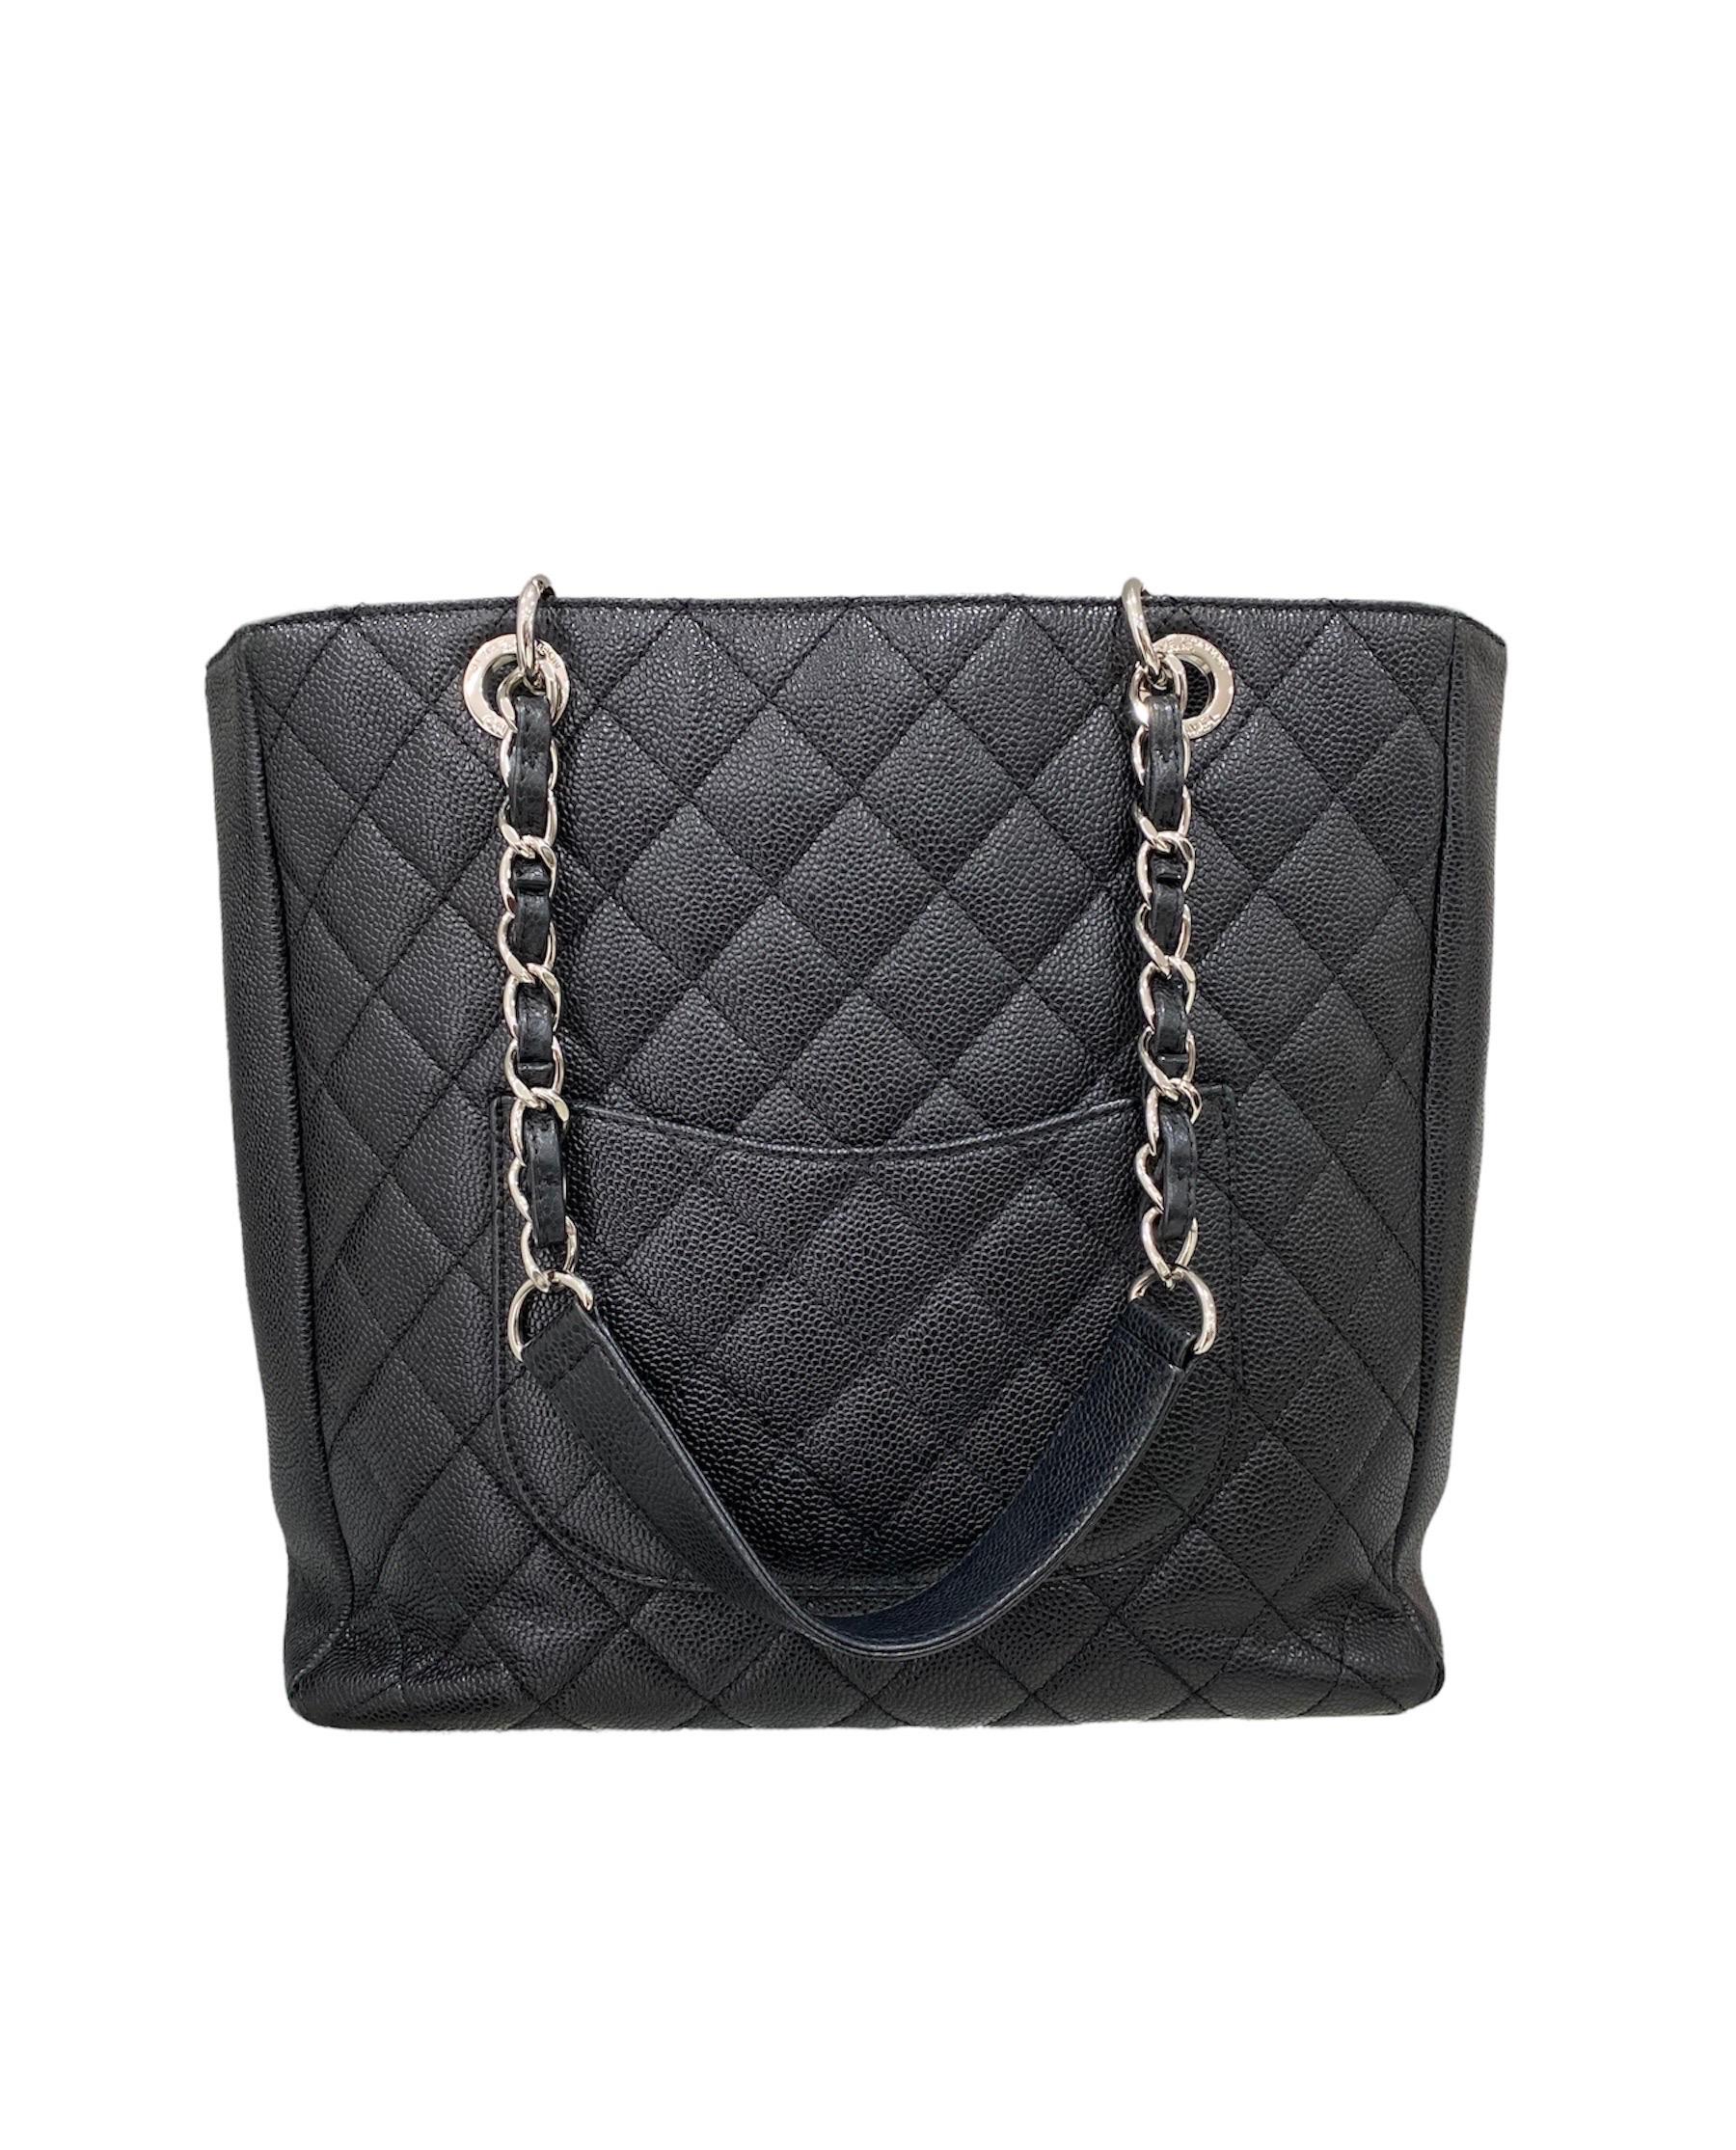 2013 Chanel PST Black Caviar Leather Shoulder Bag  2